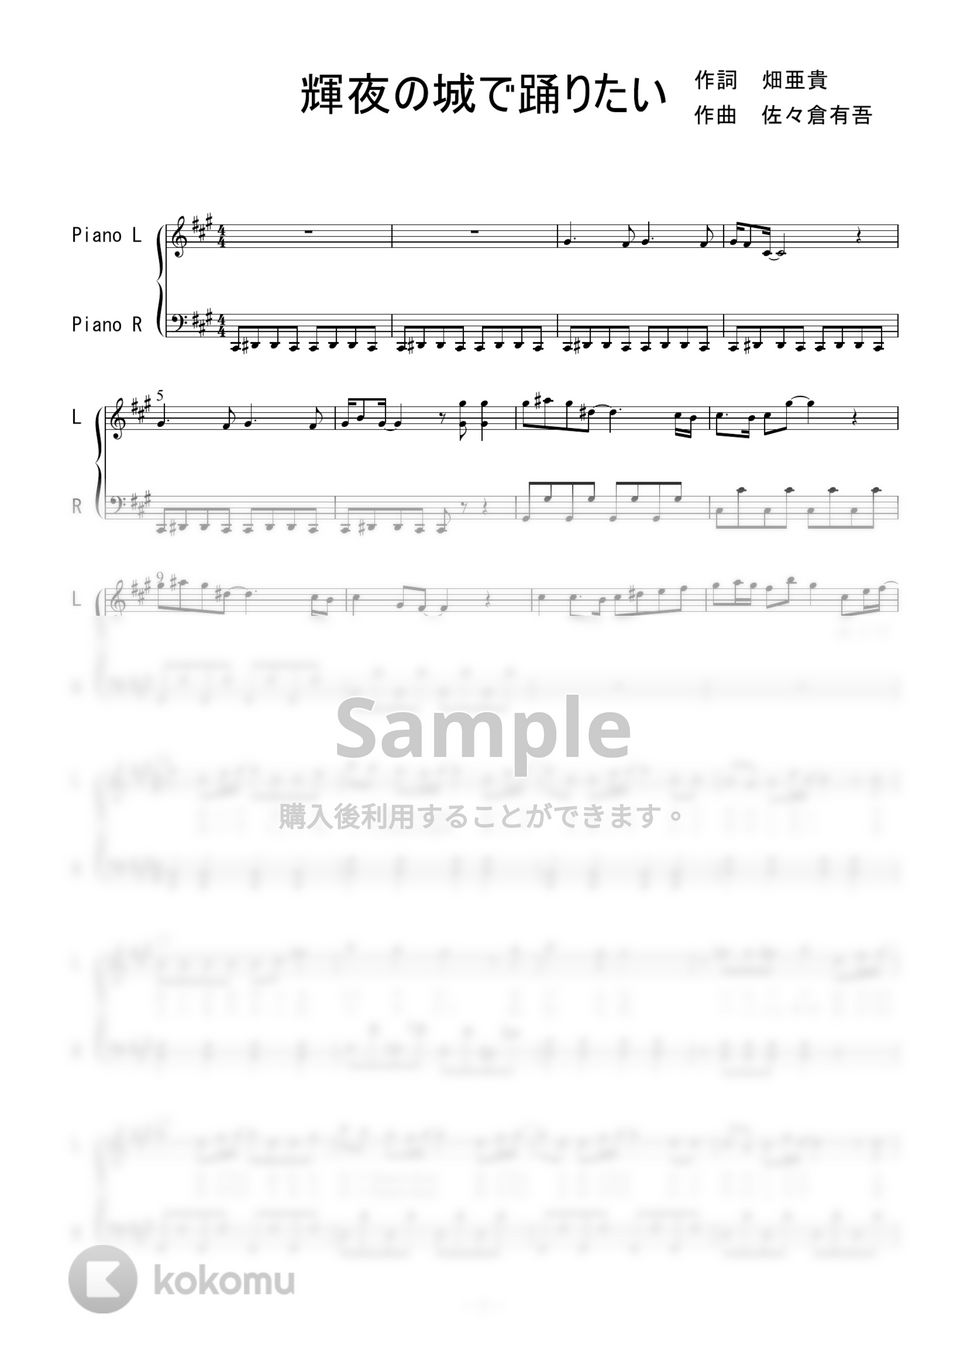 μ’Ｓ - 輝夜の城で踊りたい (ピアノソロ) by 二次元楽譜製作所